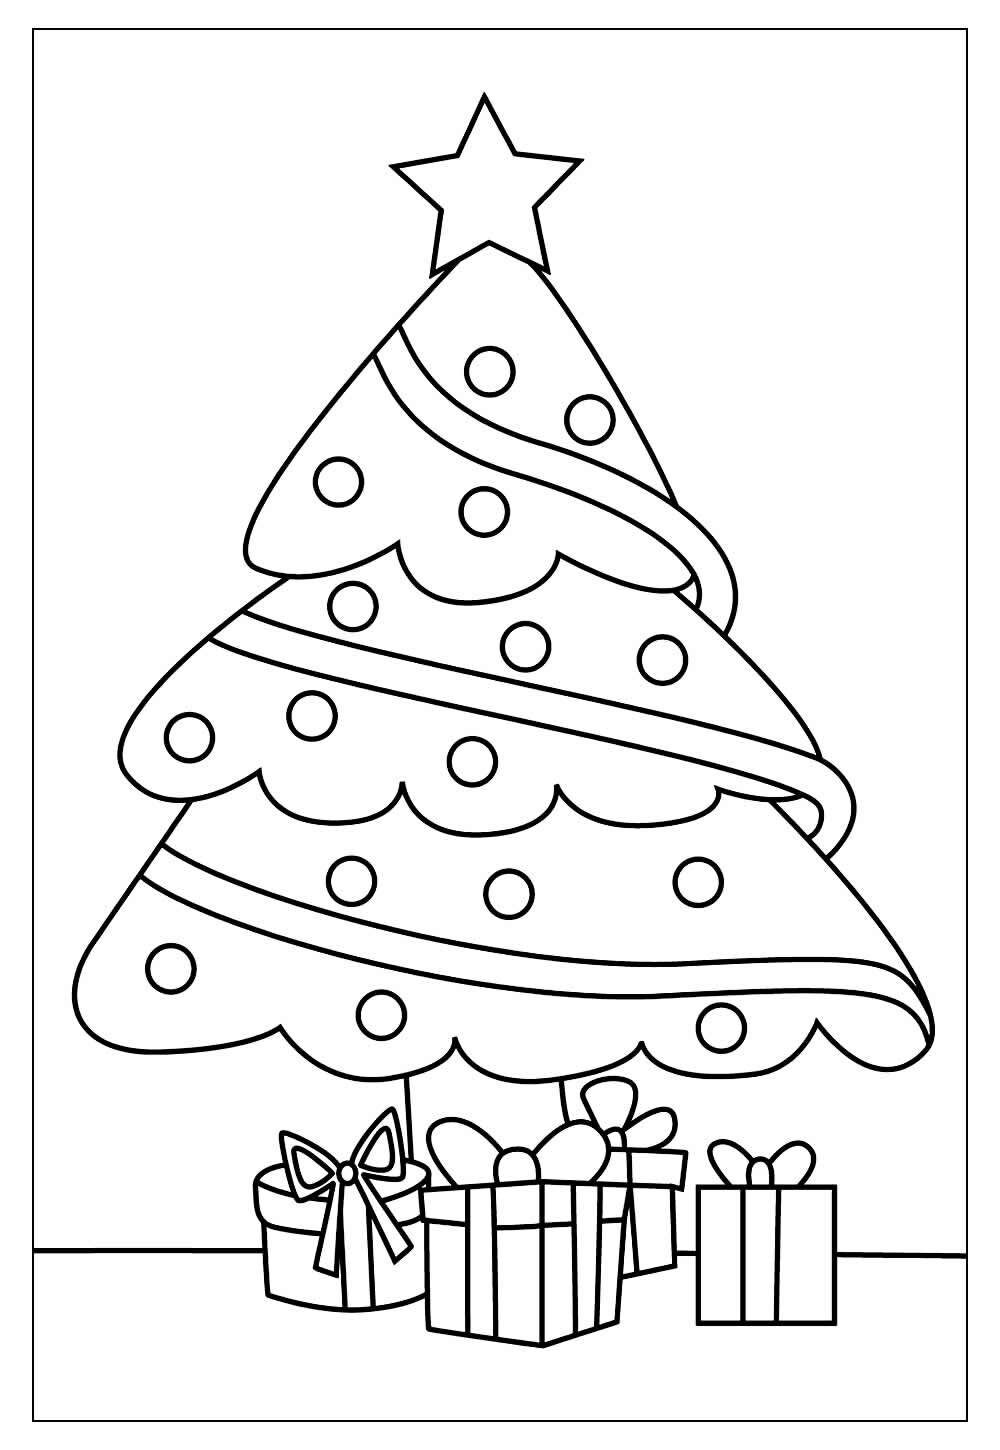 30+ Desenhos e Moldes de Árvore de Natal para colorir - Como fazer